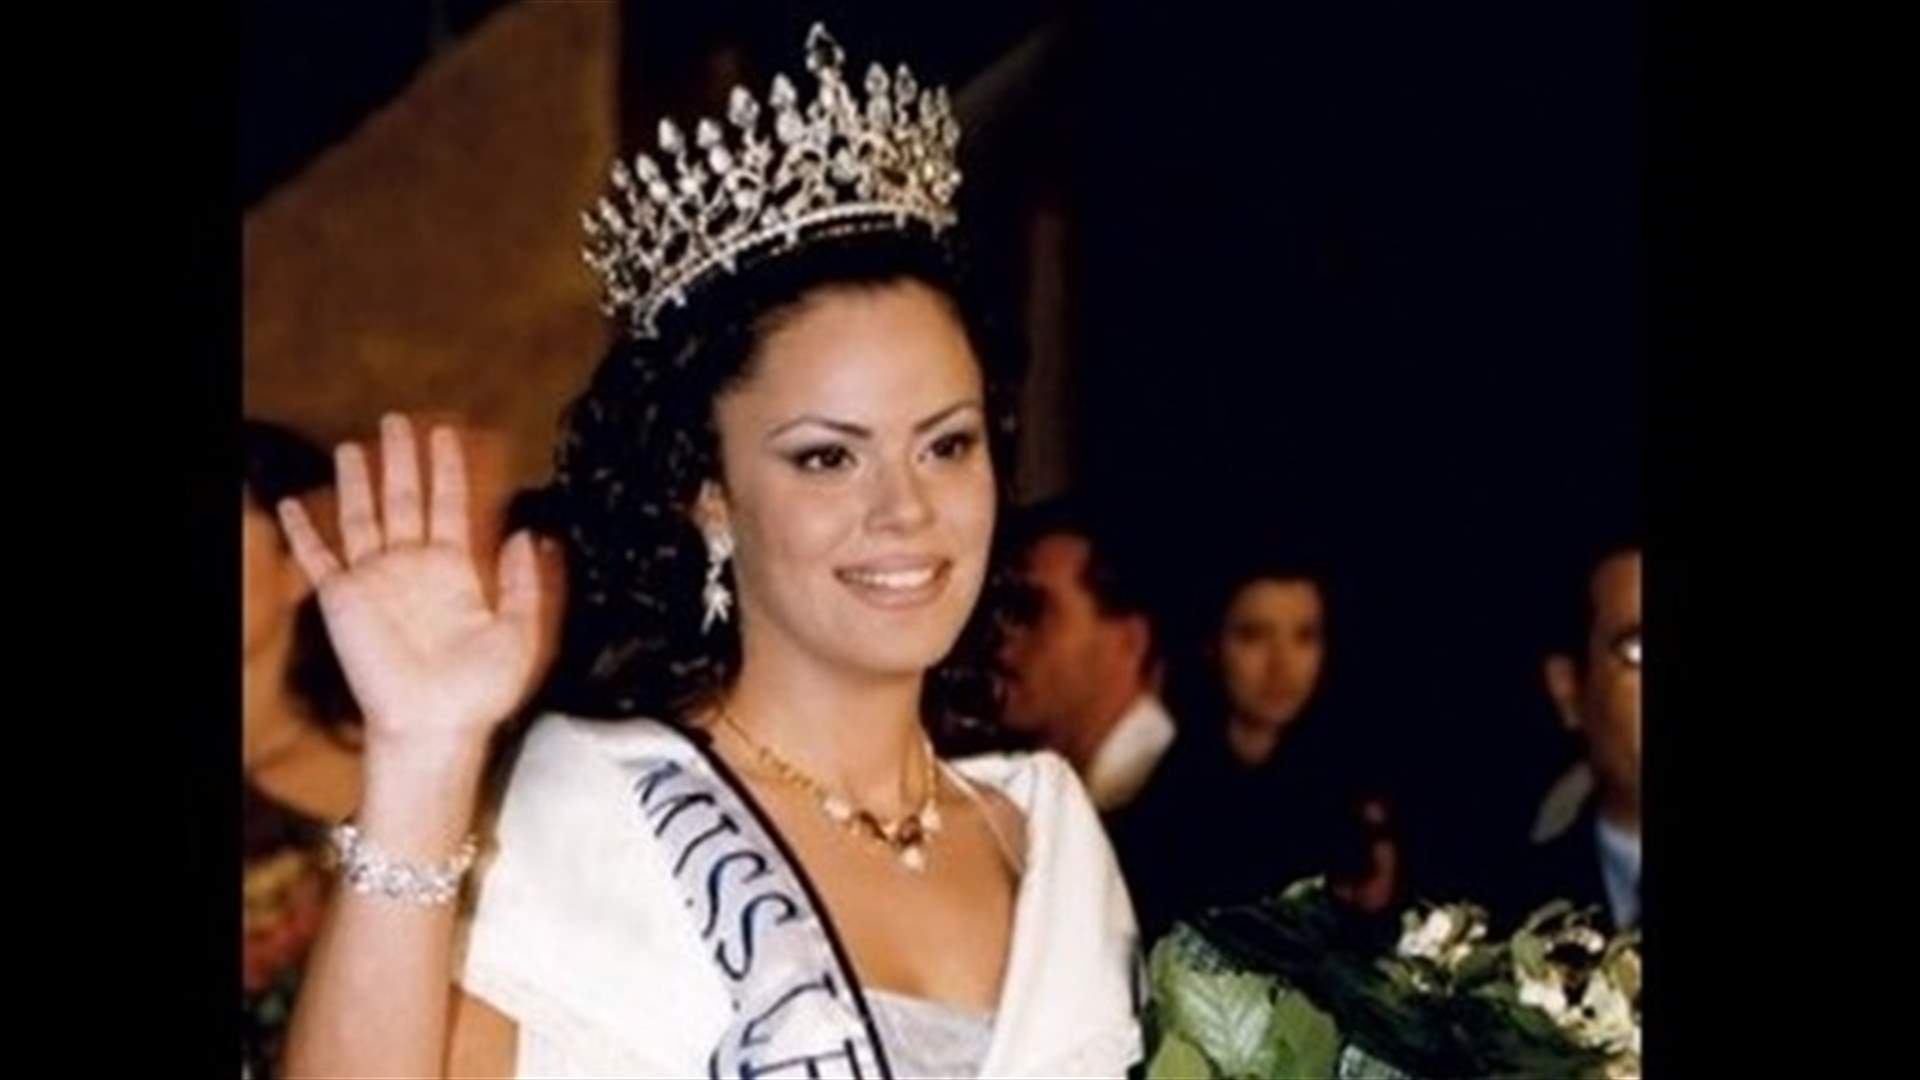 ملكة جمال لبنان السابقة نورما نعوم تفيض جمالاً بعد غيابٍ واحتجاب (فيديو)